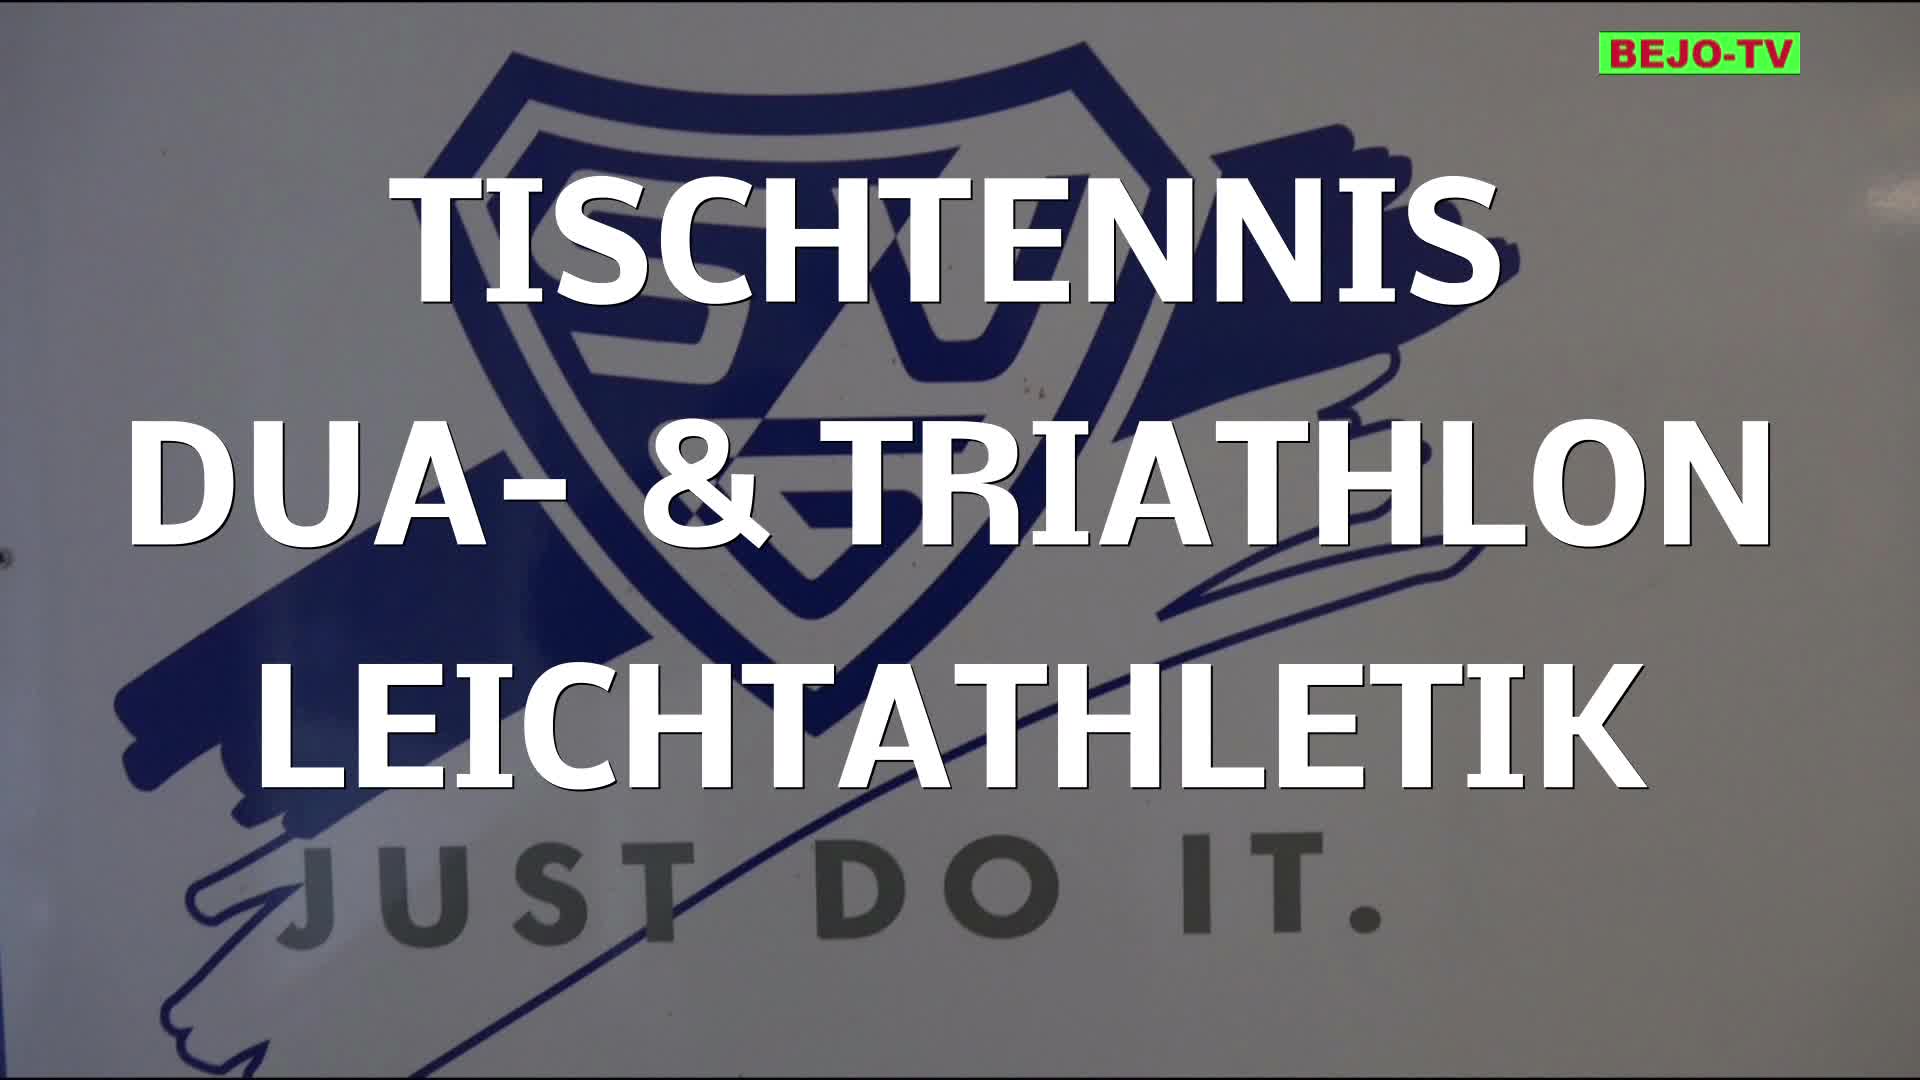 SVG, Folge 4 - Tischtennis, Duathlon und Triathlon, Leichtathletik